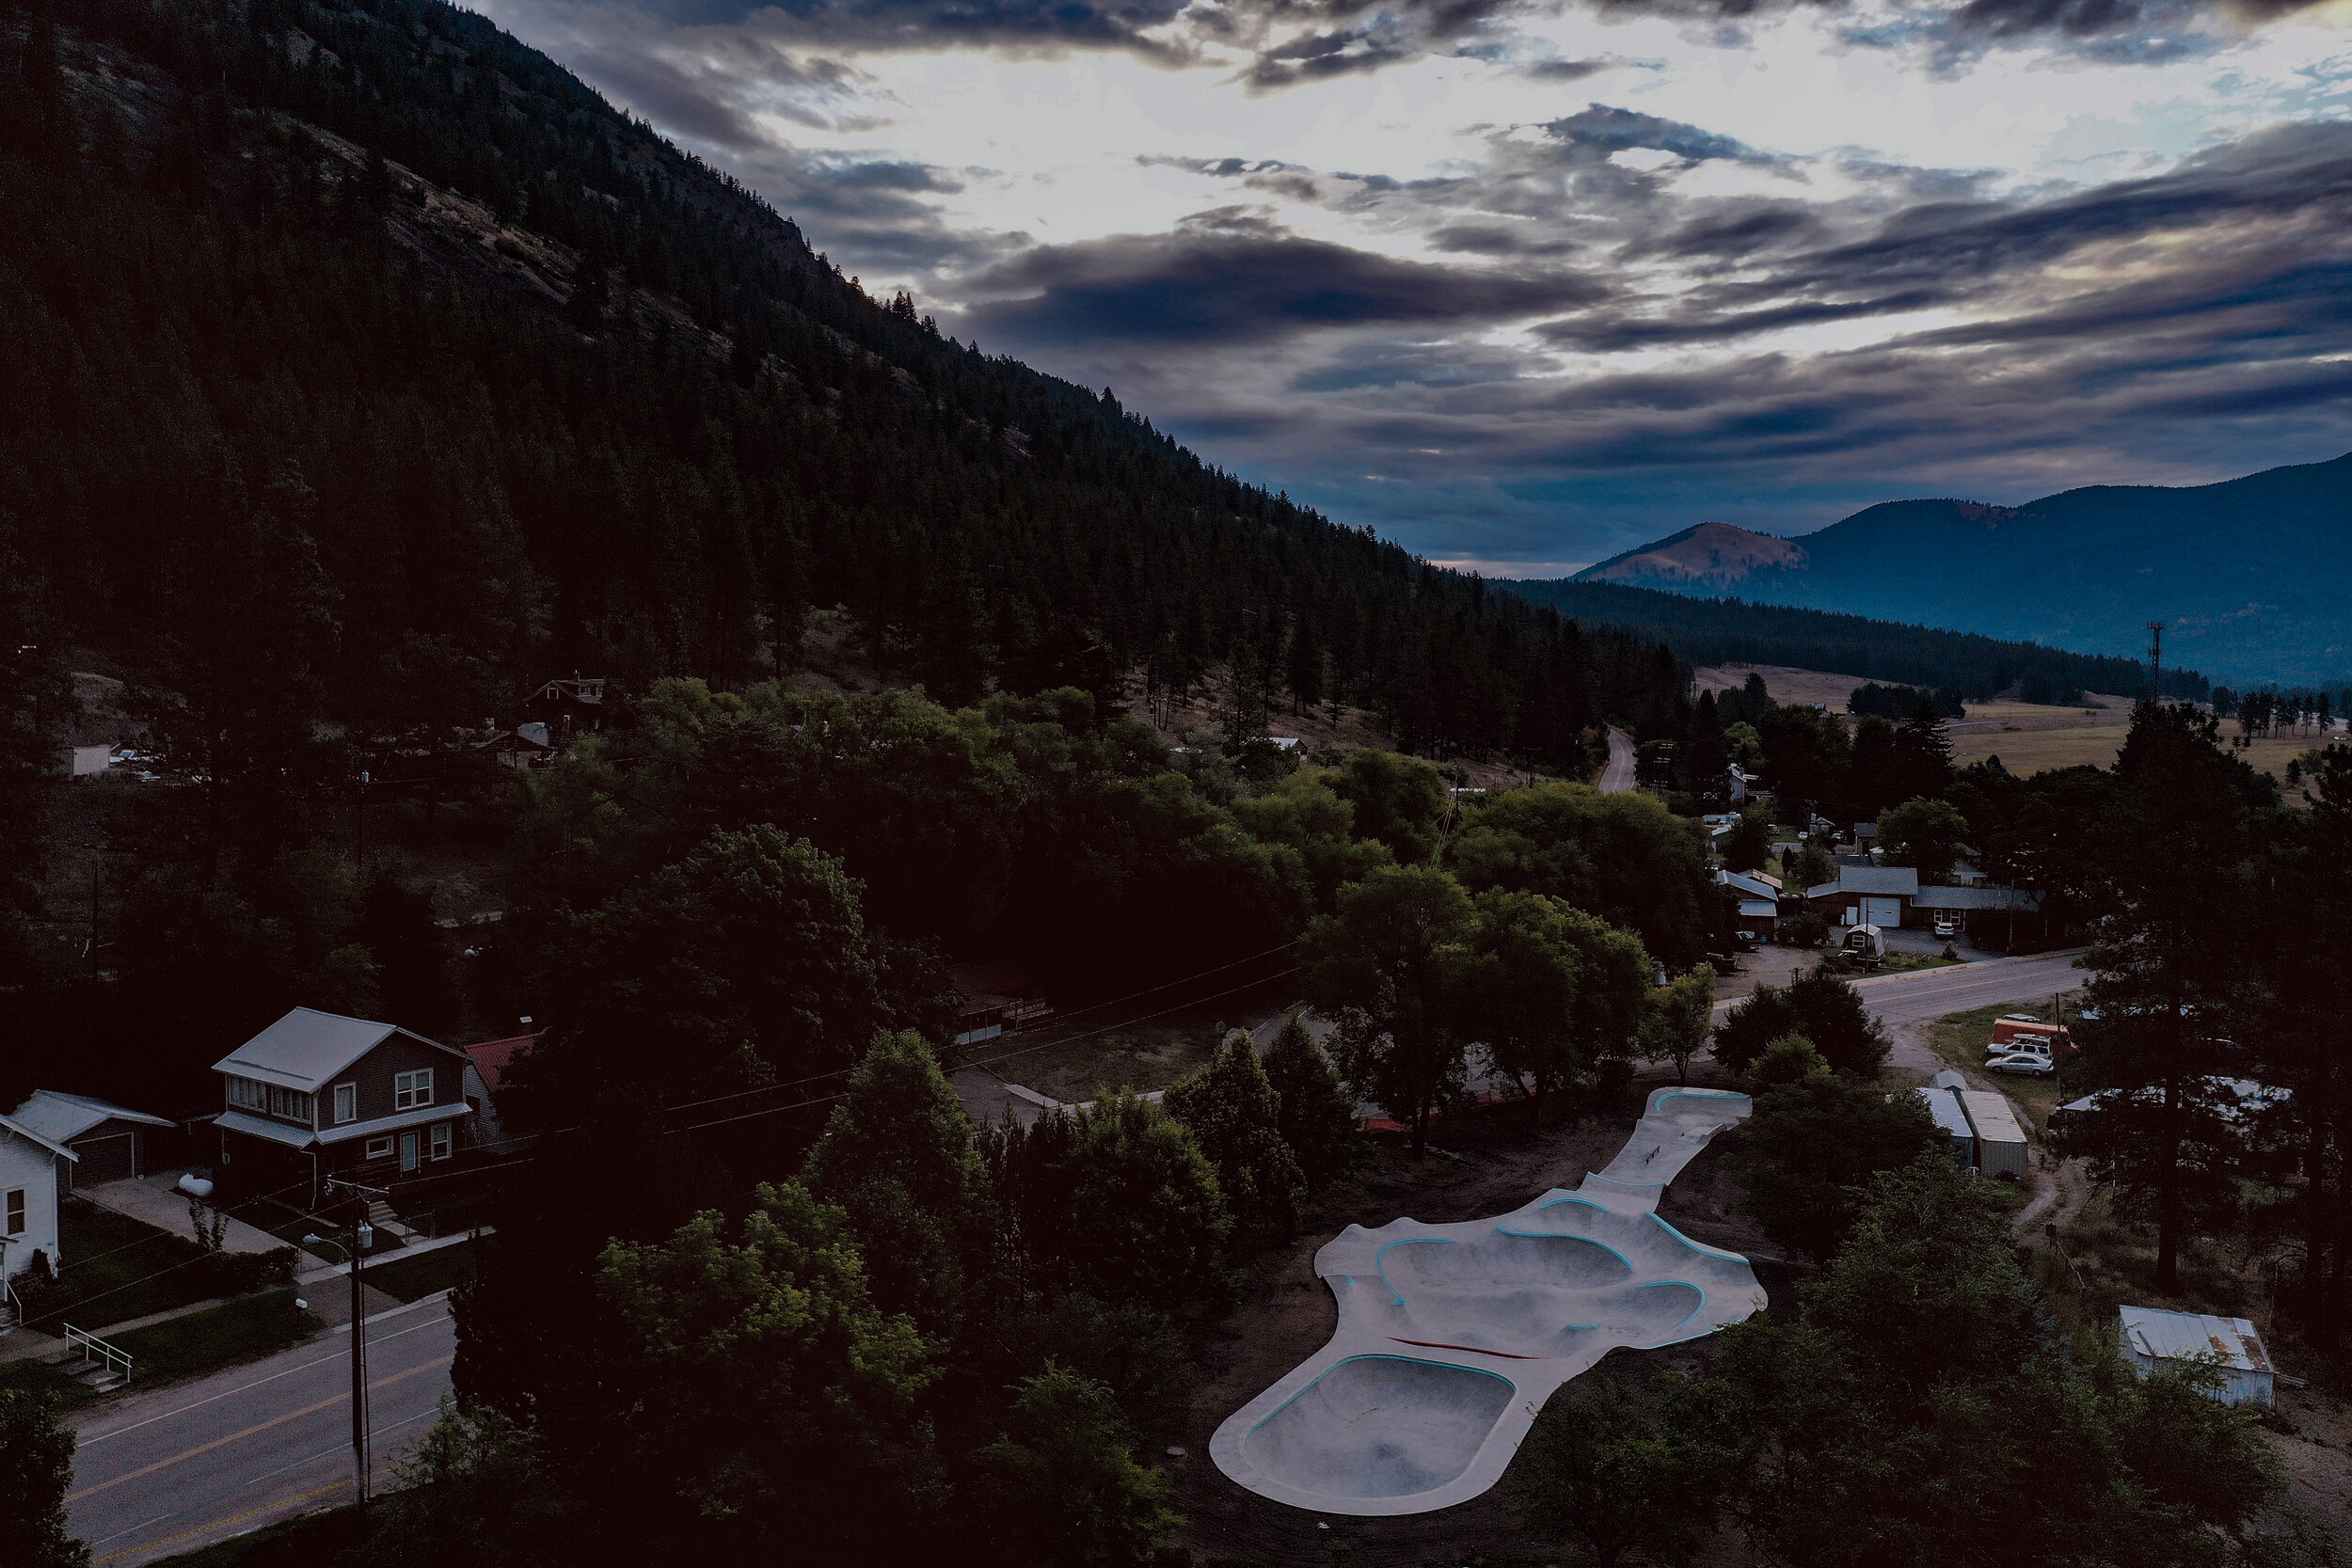 A true gem 💎 Alberton, Montana